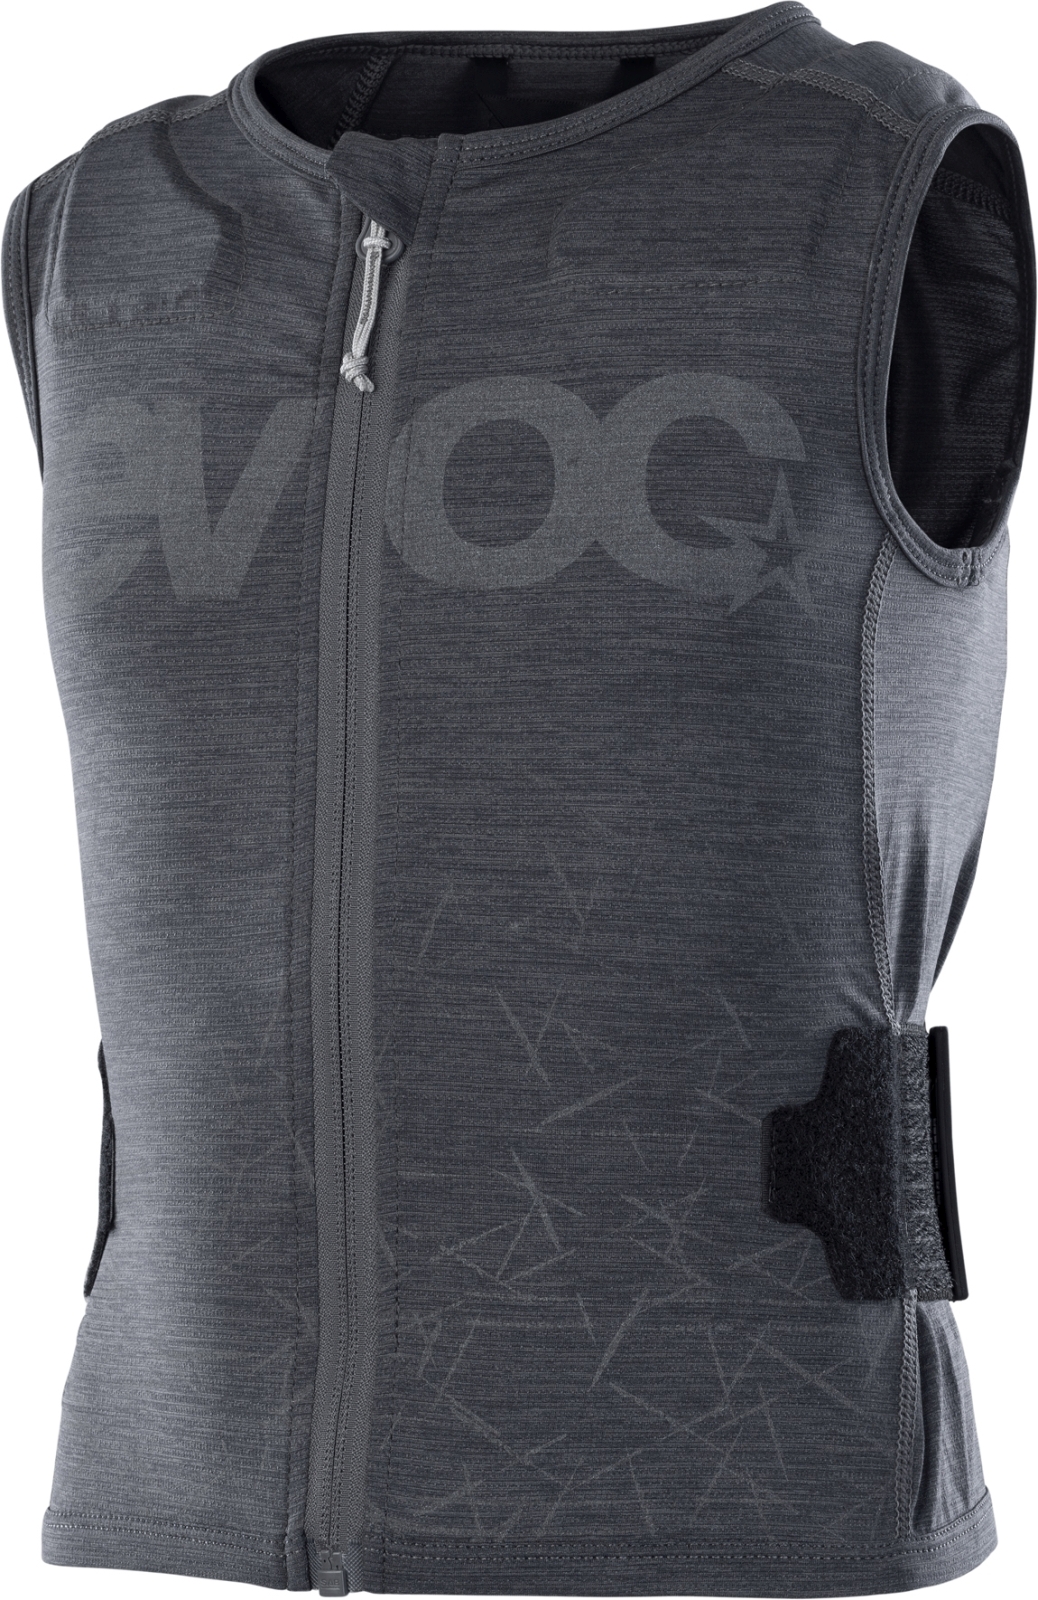 Evoc Protector Vest Kids - carbon grey JL